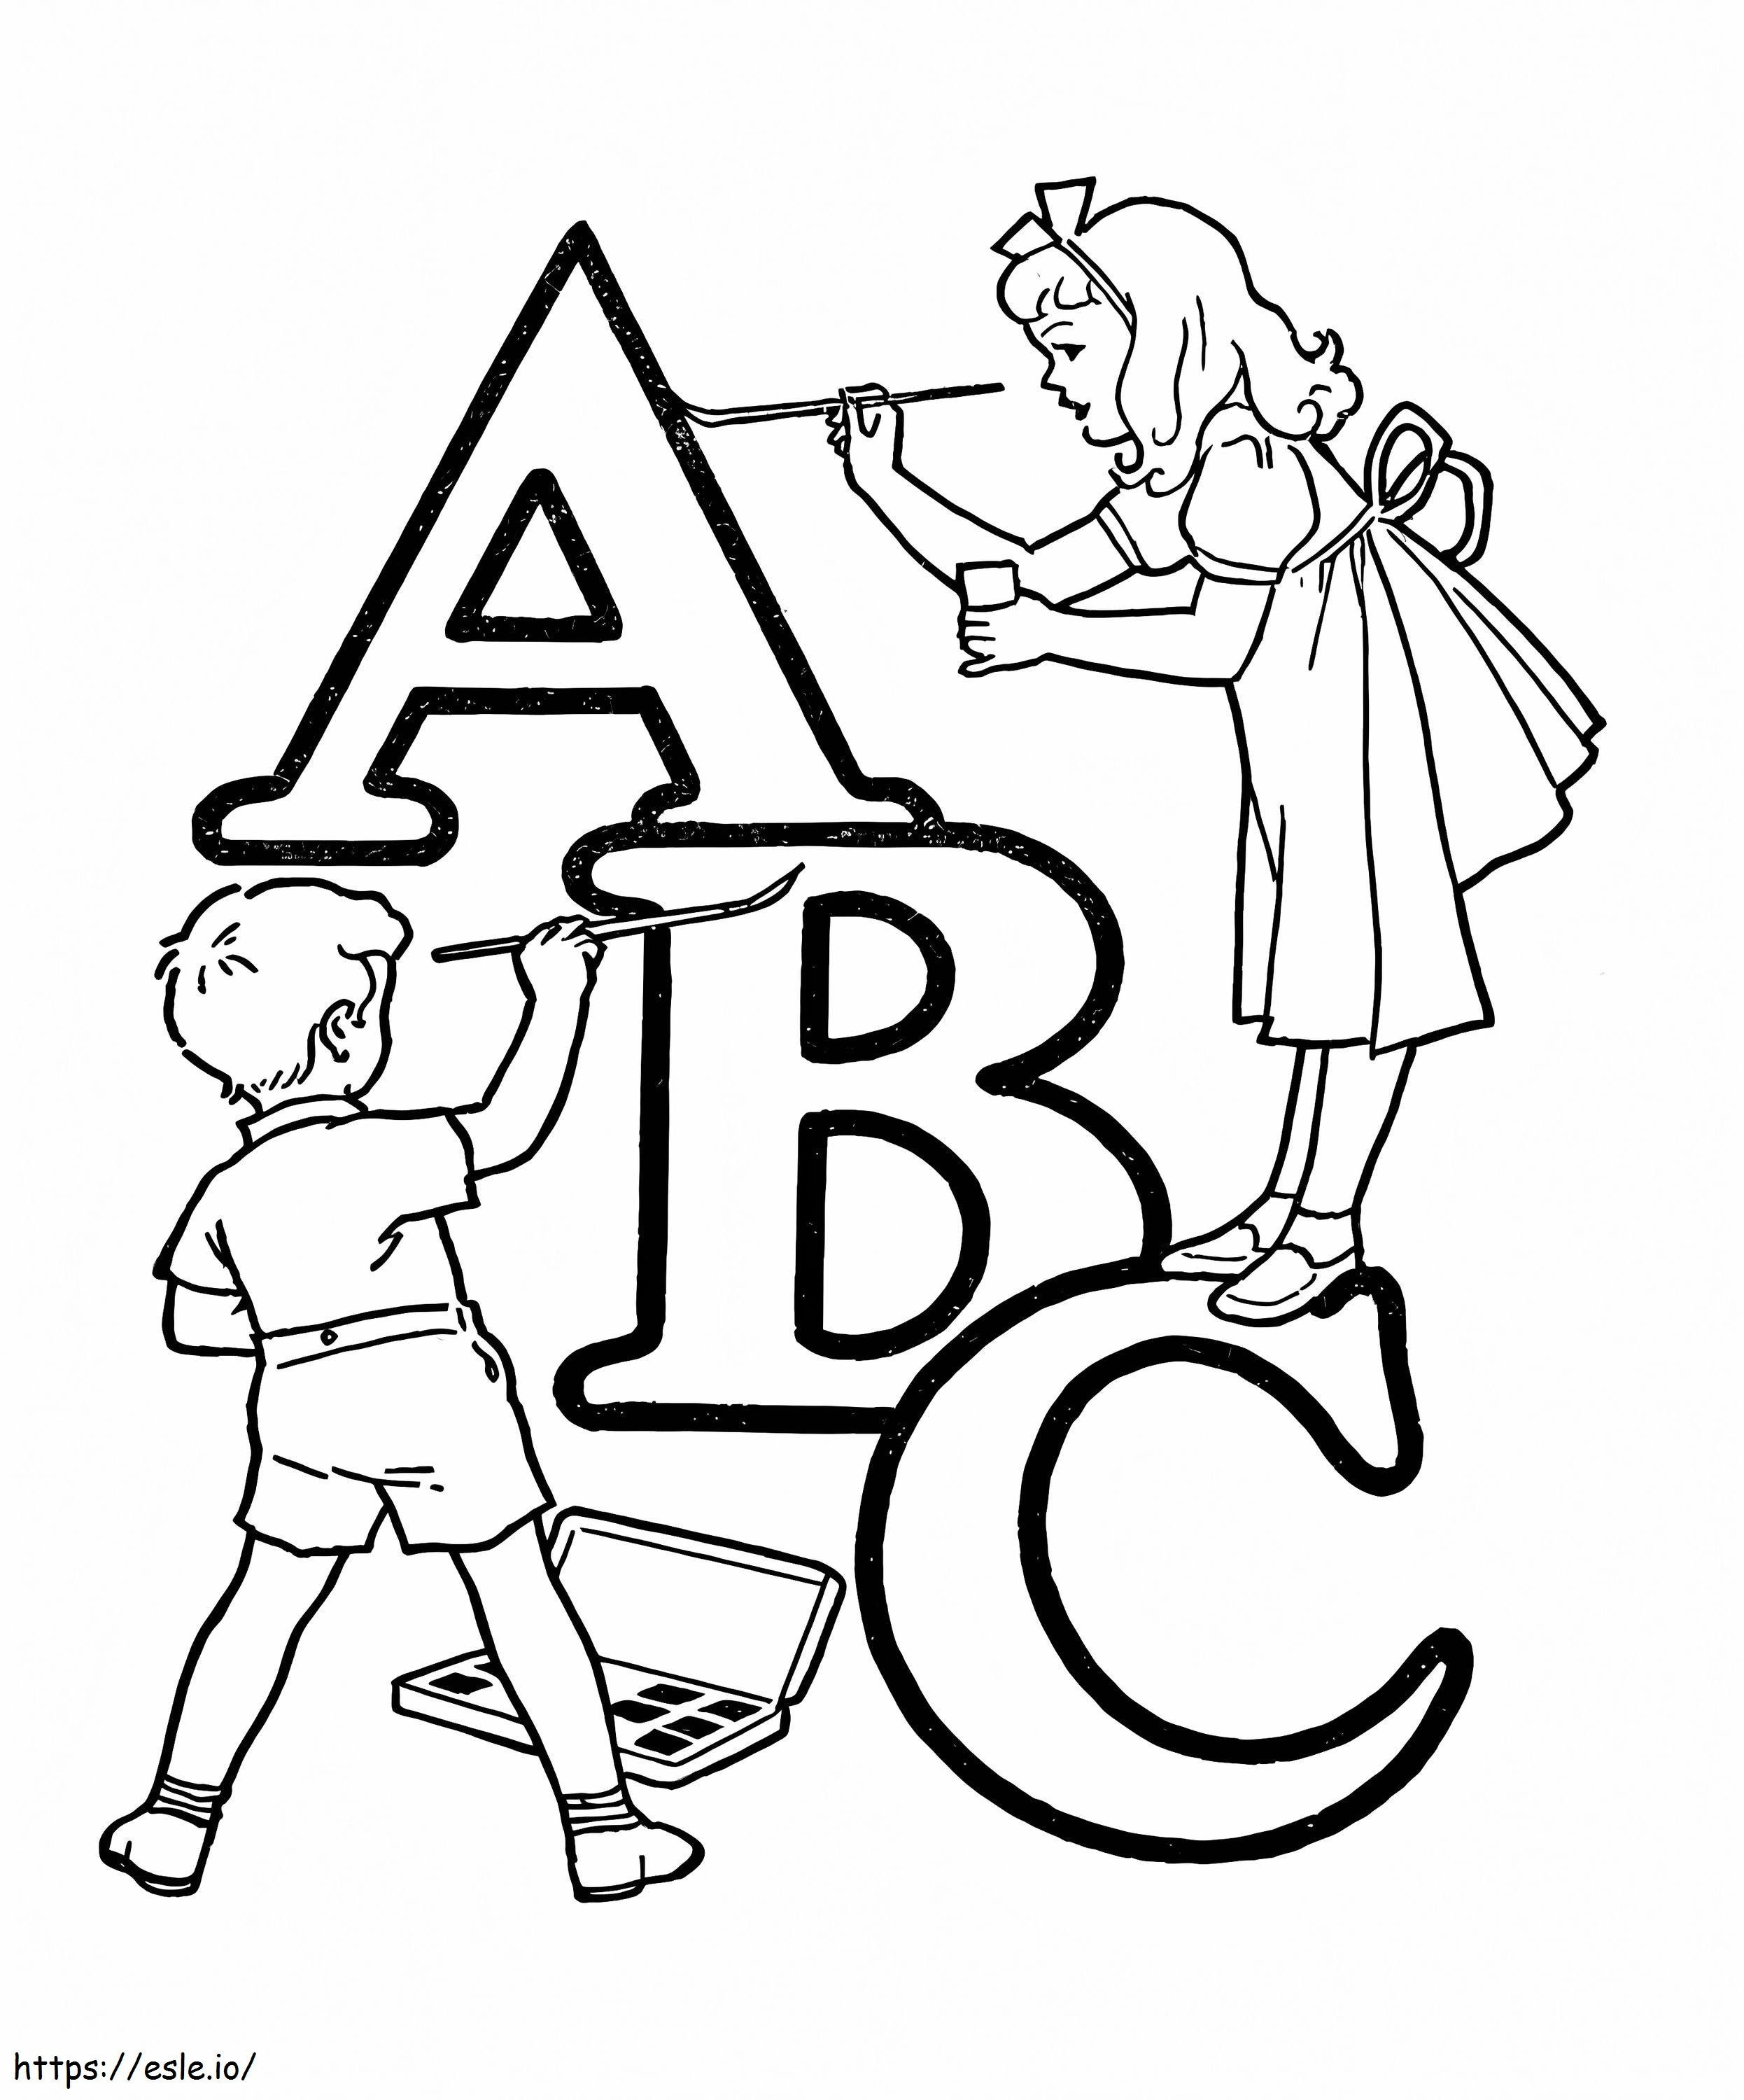 Crianças com ABC para colorir